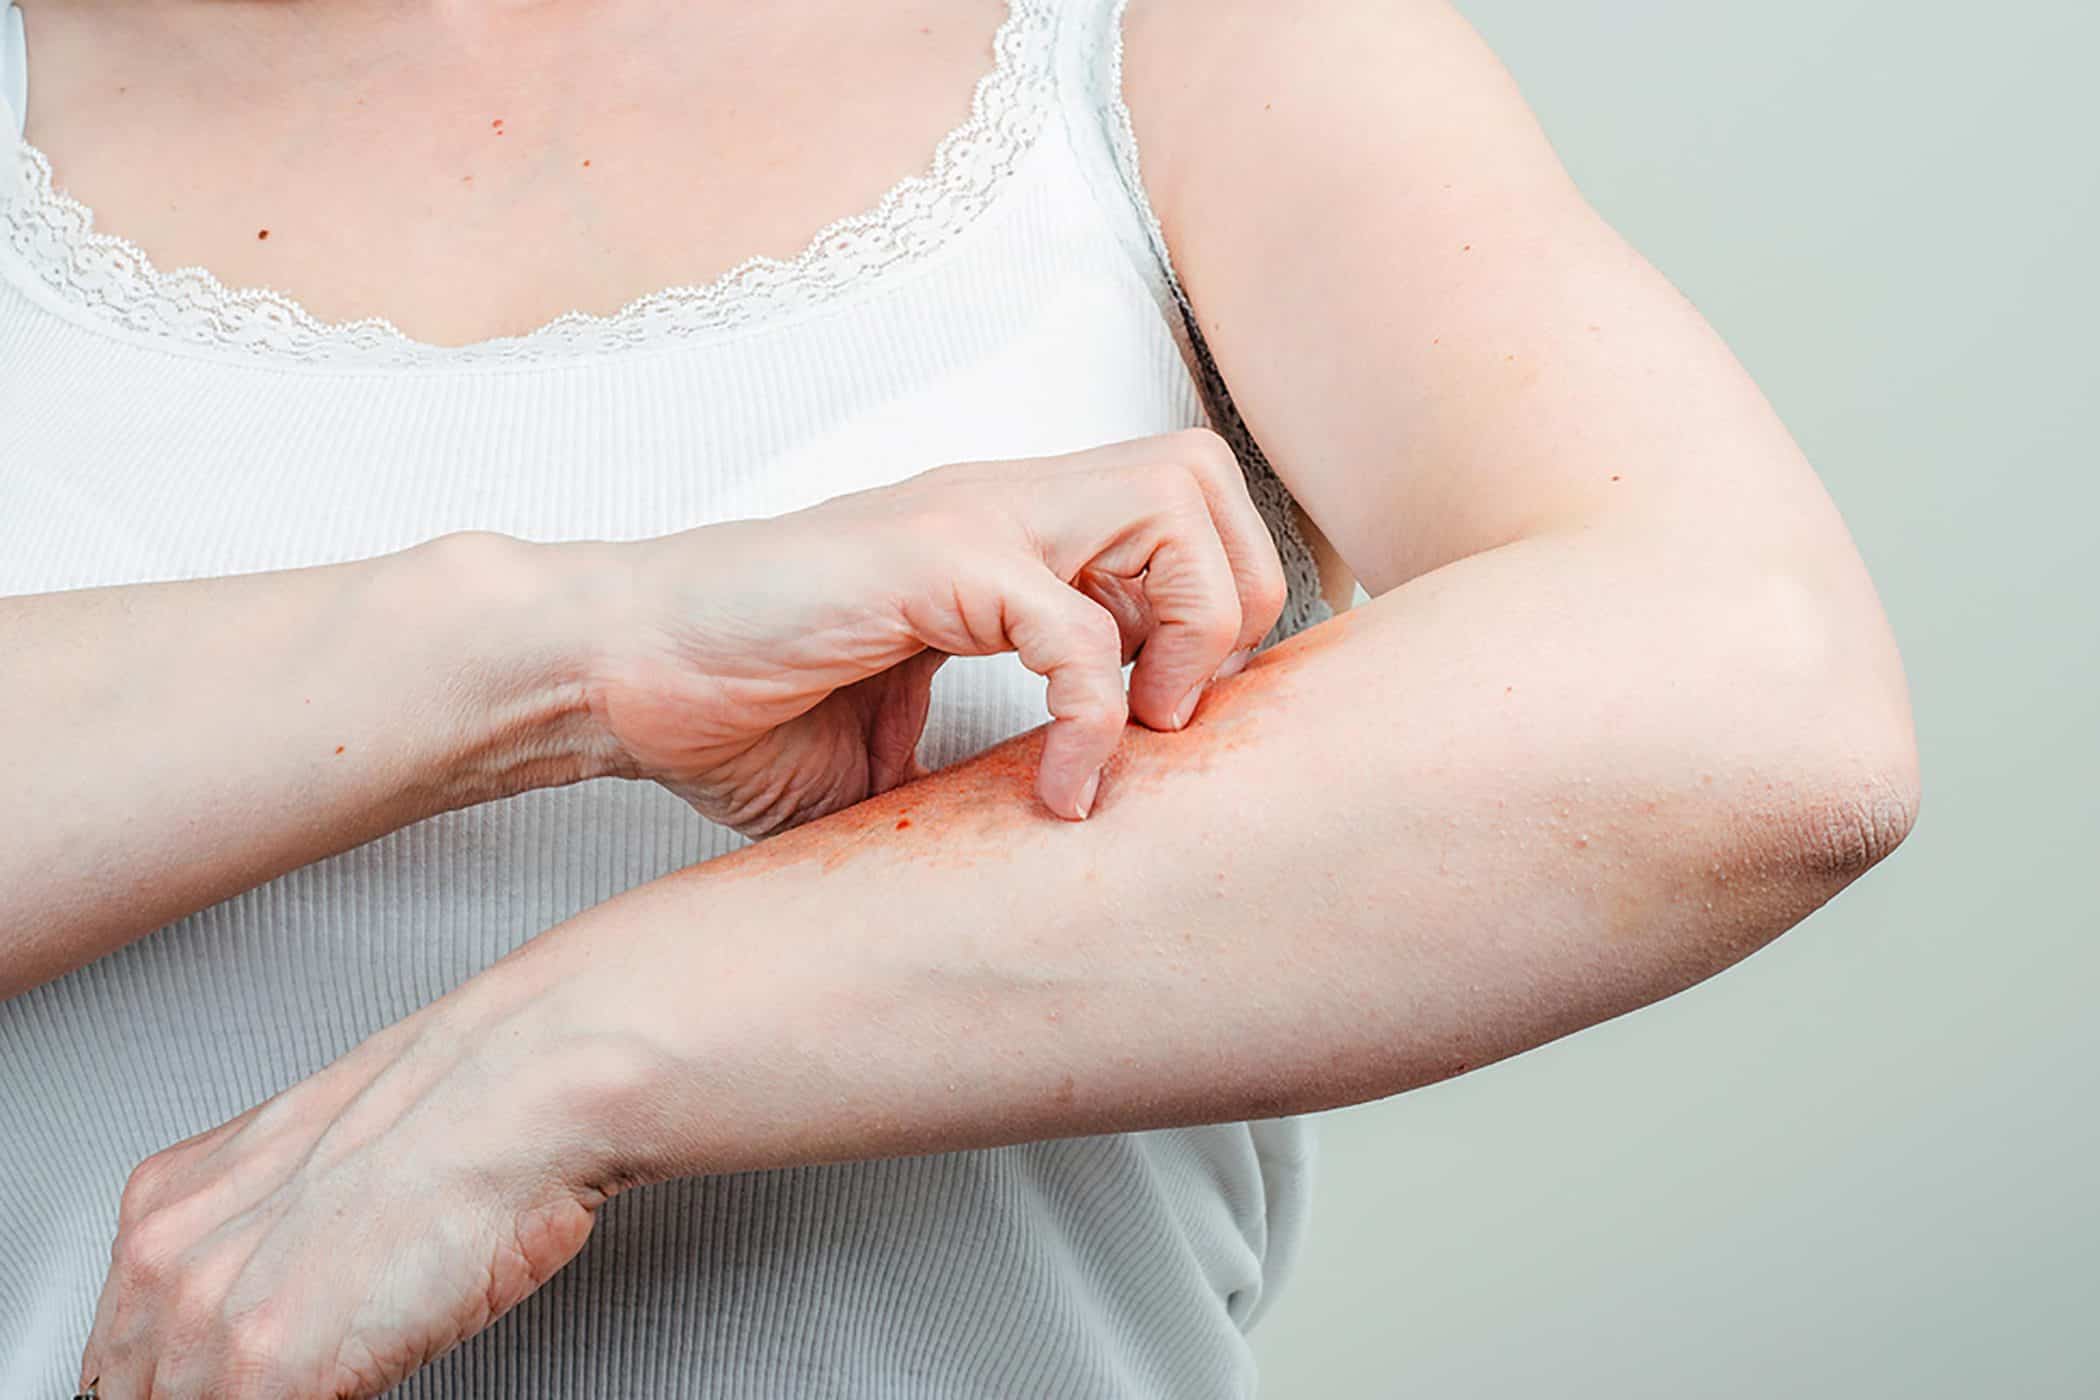 Hören Sie mit diesen 9 Tipps auf, juckende Haut zu kratzen